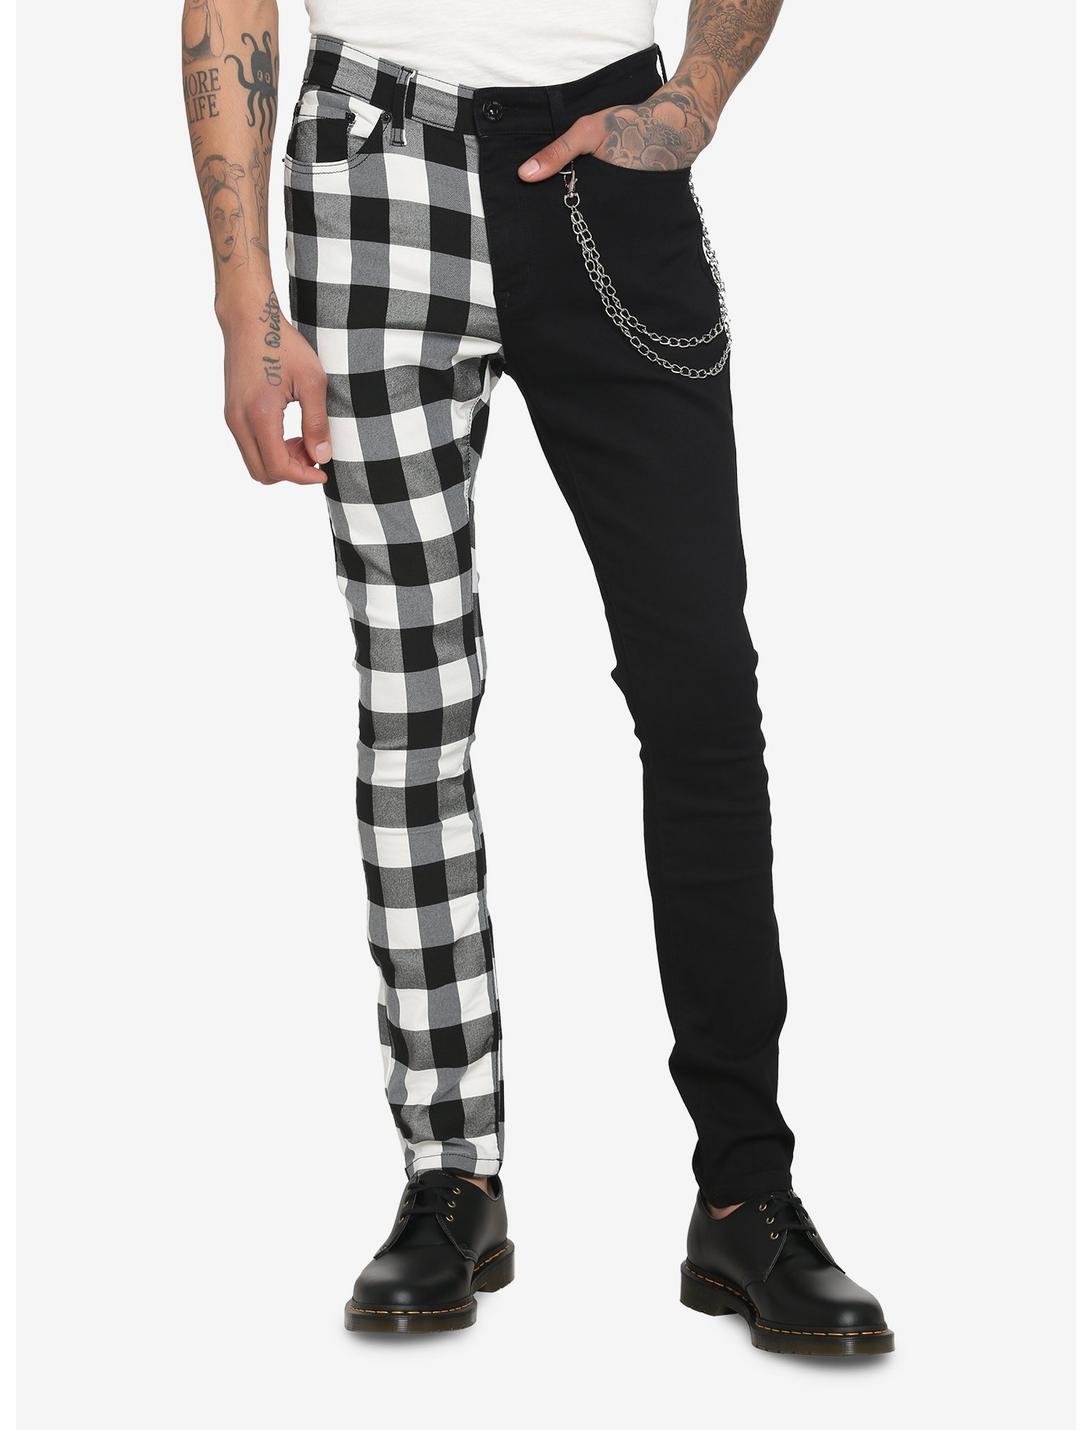 Black & White Checkered Split Leg Chain Stinger Jeans, BLACK  WHITE, hi-res